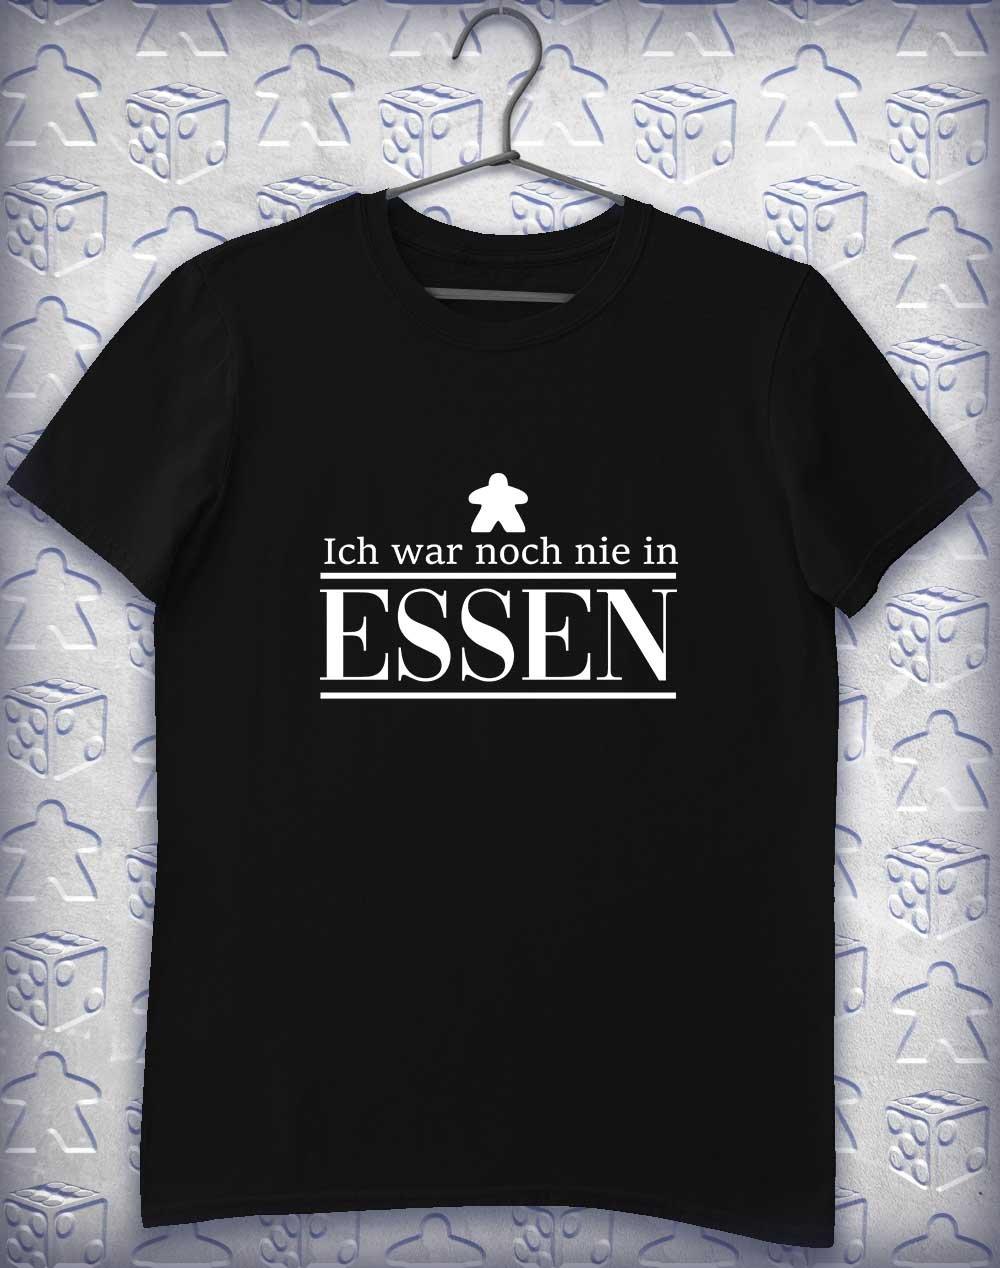 Never Been to Essen Alphagamer T-Shirt S / Black  - Off World Tees